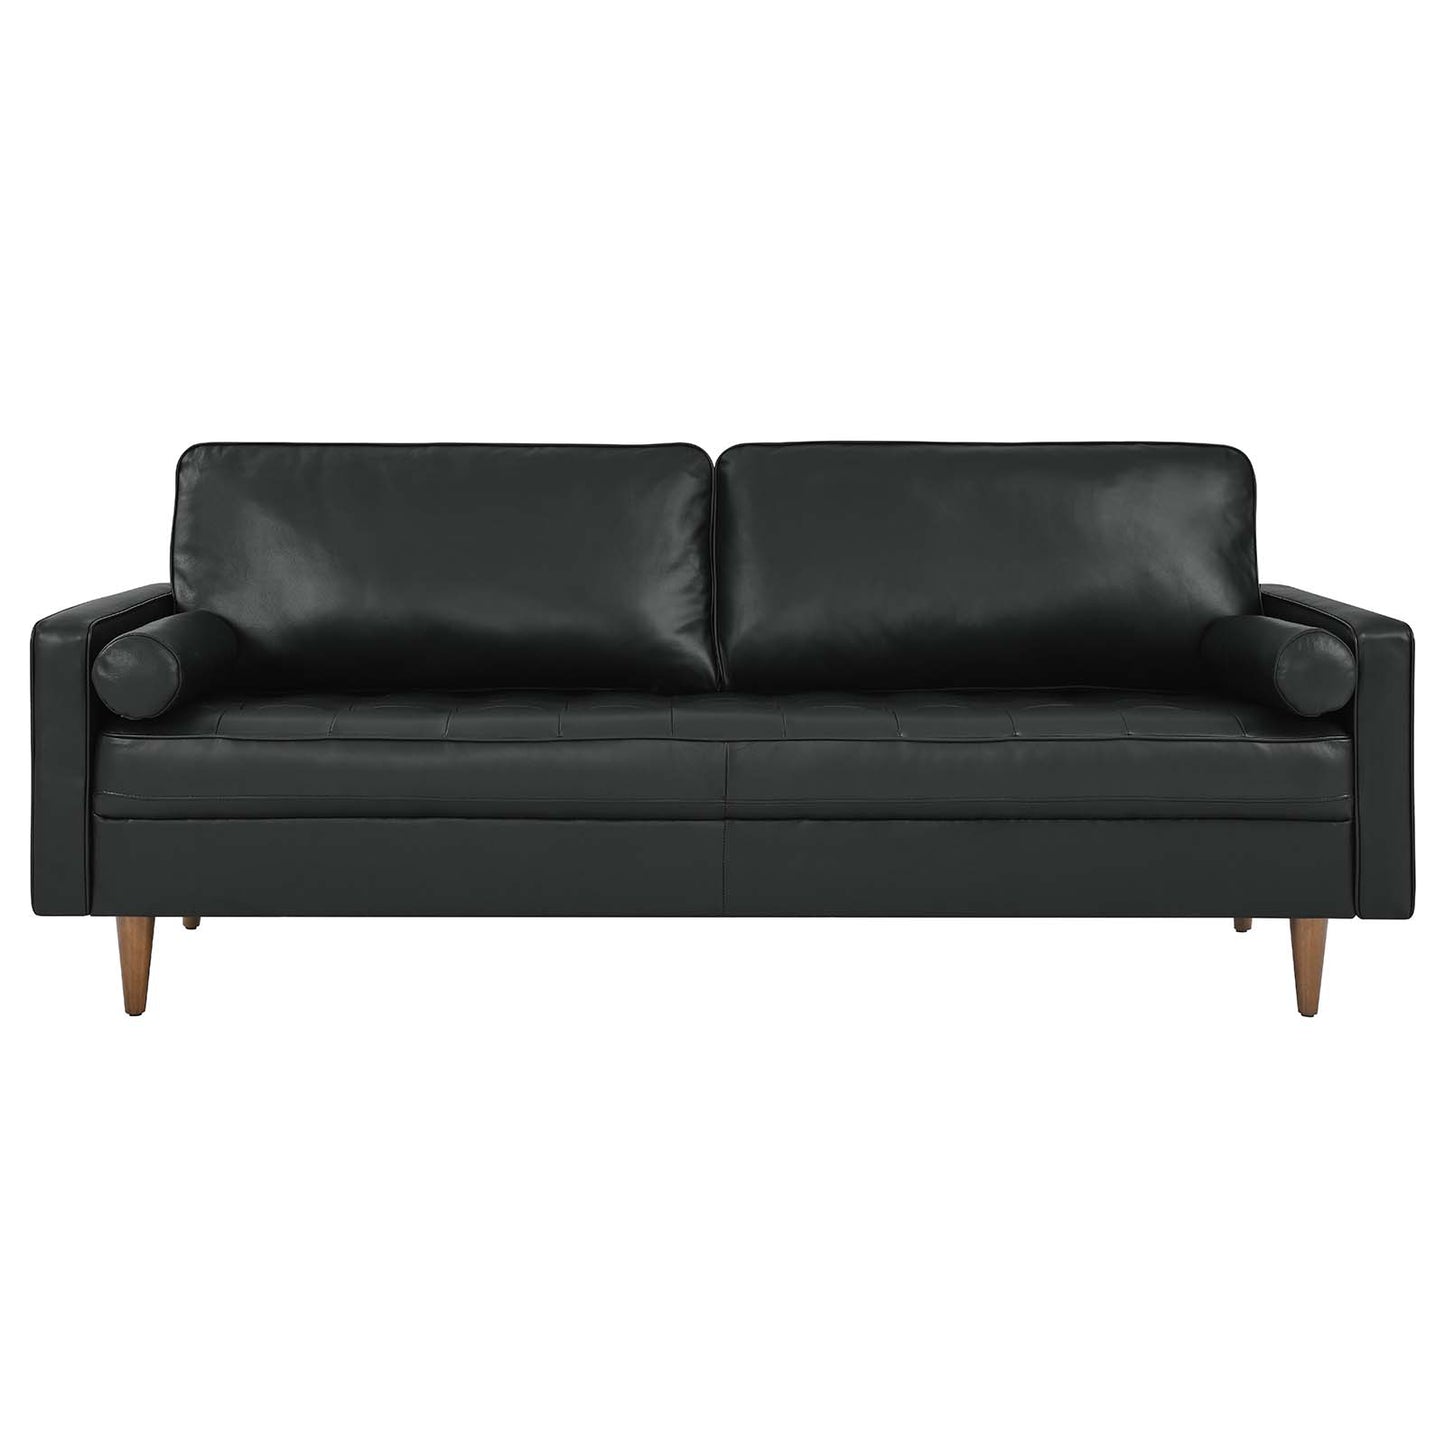 Valour 81" Leather Sofa Black EEI-4634-BLK